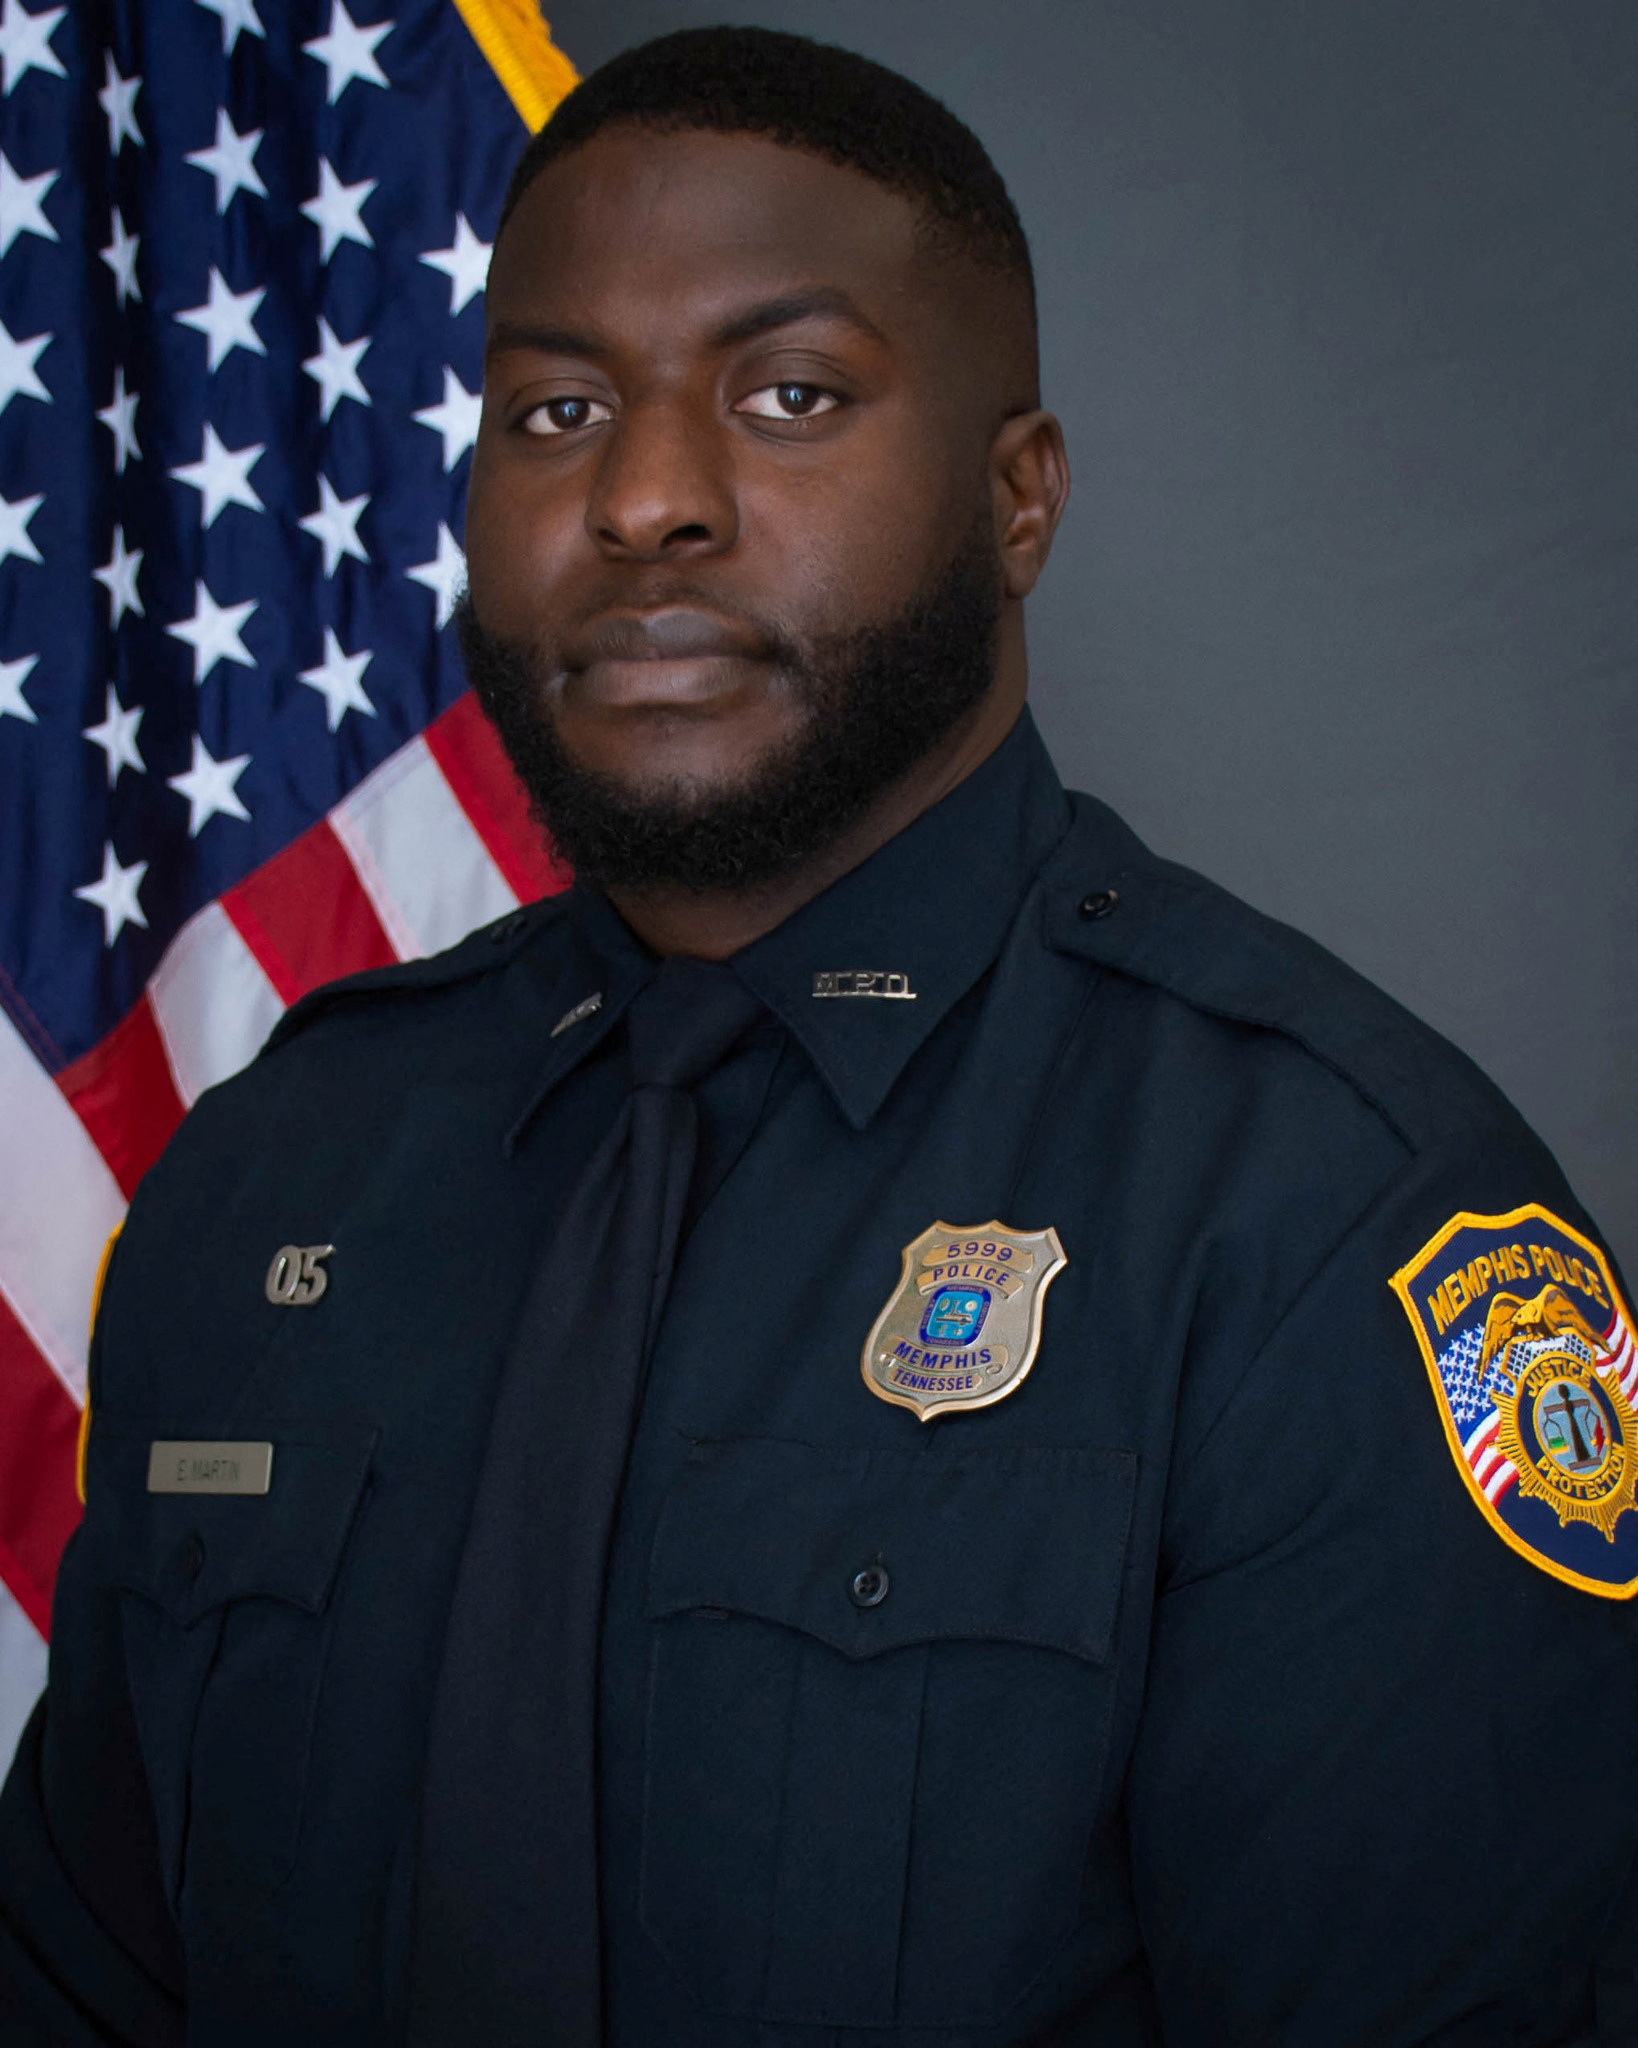 El oficial Emmitt Martin III, que había sido contratado por el Departamento de Policía de Memphis en marzo de 2018 y fue despedido con otros cuatro oficiales después de su participación en una parada de tráfico que terminó con la muerte de Tire Nichols